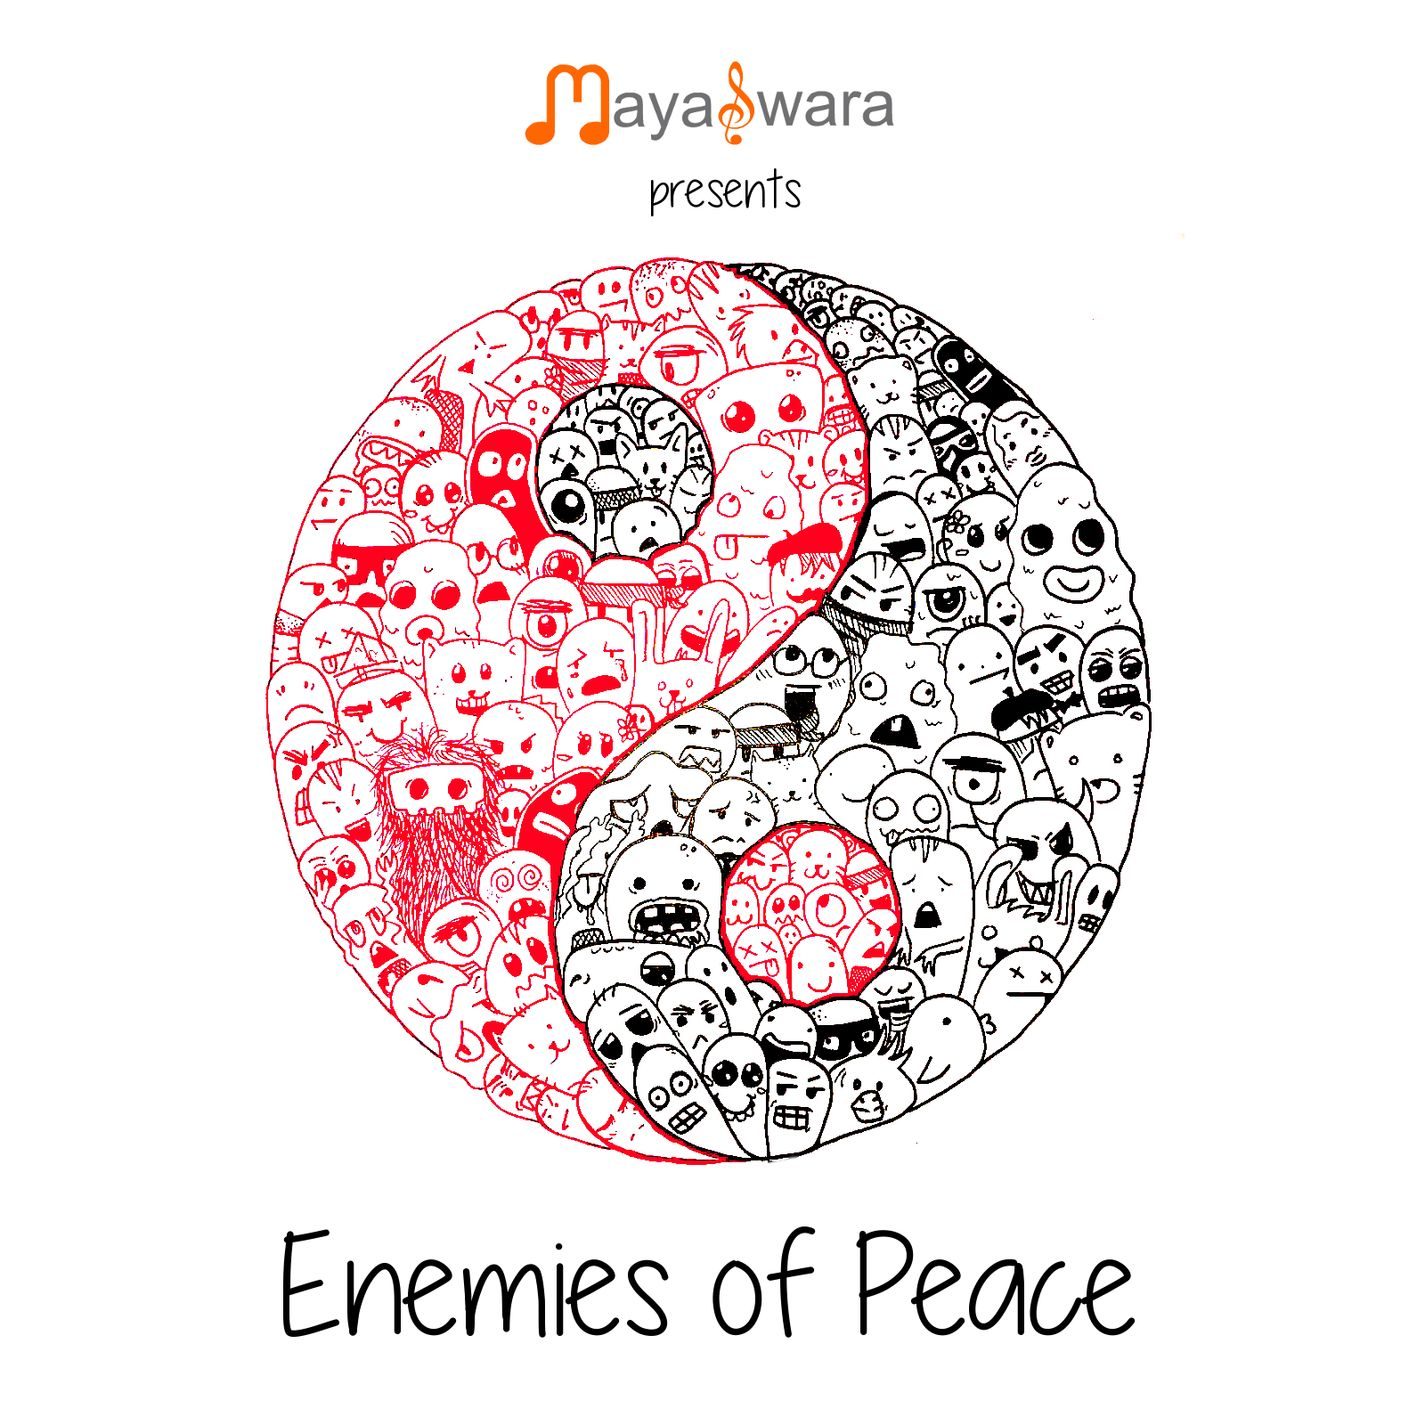 Enemies of Peace